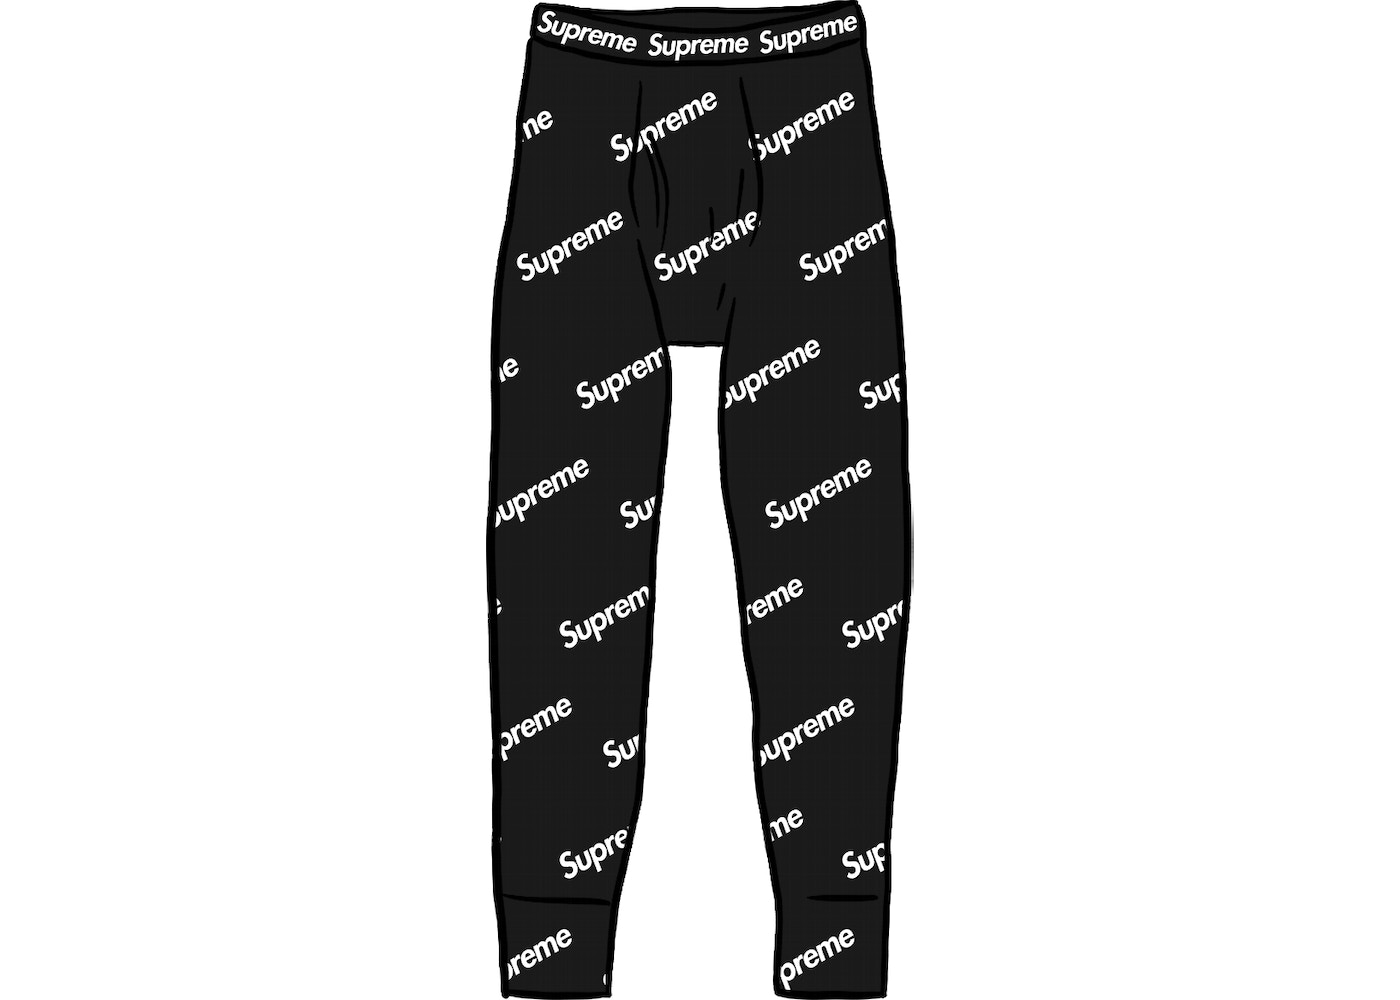 Supreme Hanes Thermal Pant (1 Pack) Black Logos - FW20